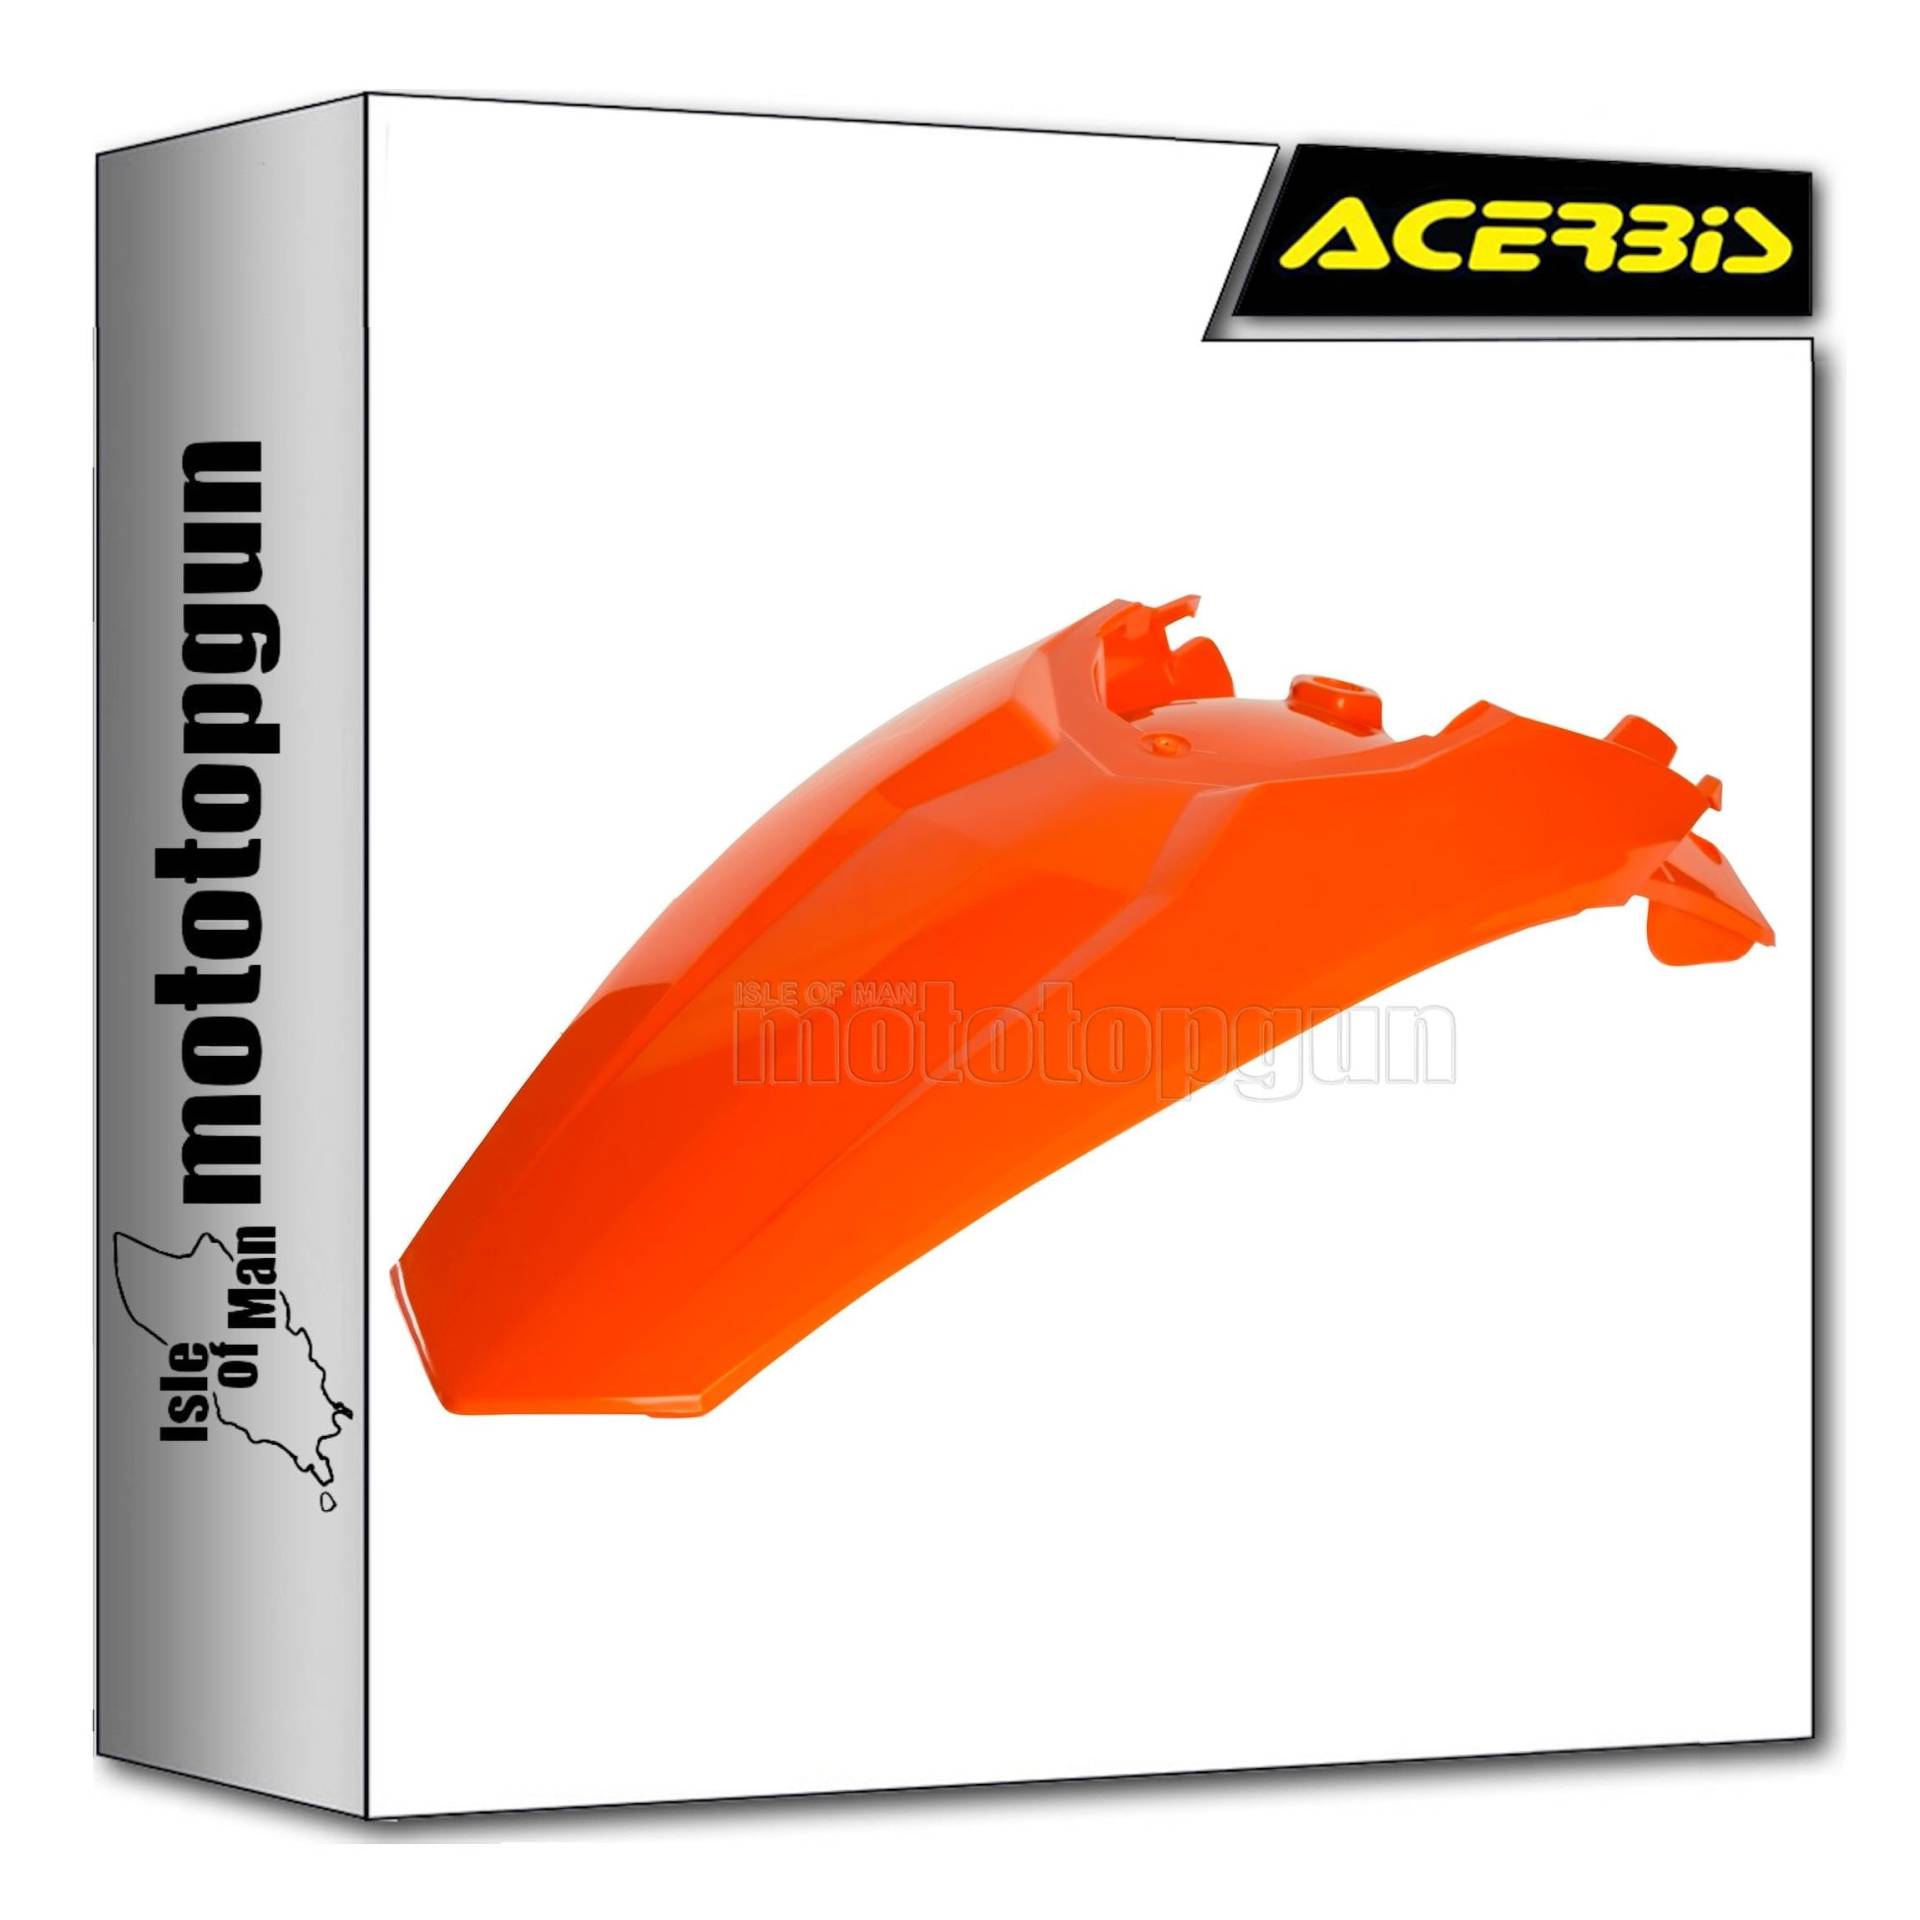 acerbis 0015691.011.016 kotflugel hinten orange kompatibel mit ktm sx-f 350 2011 2012 2013 2014 2015 mototopgun von MOTOTOPGUN